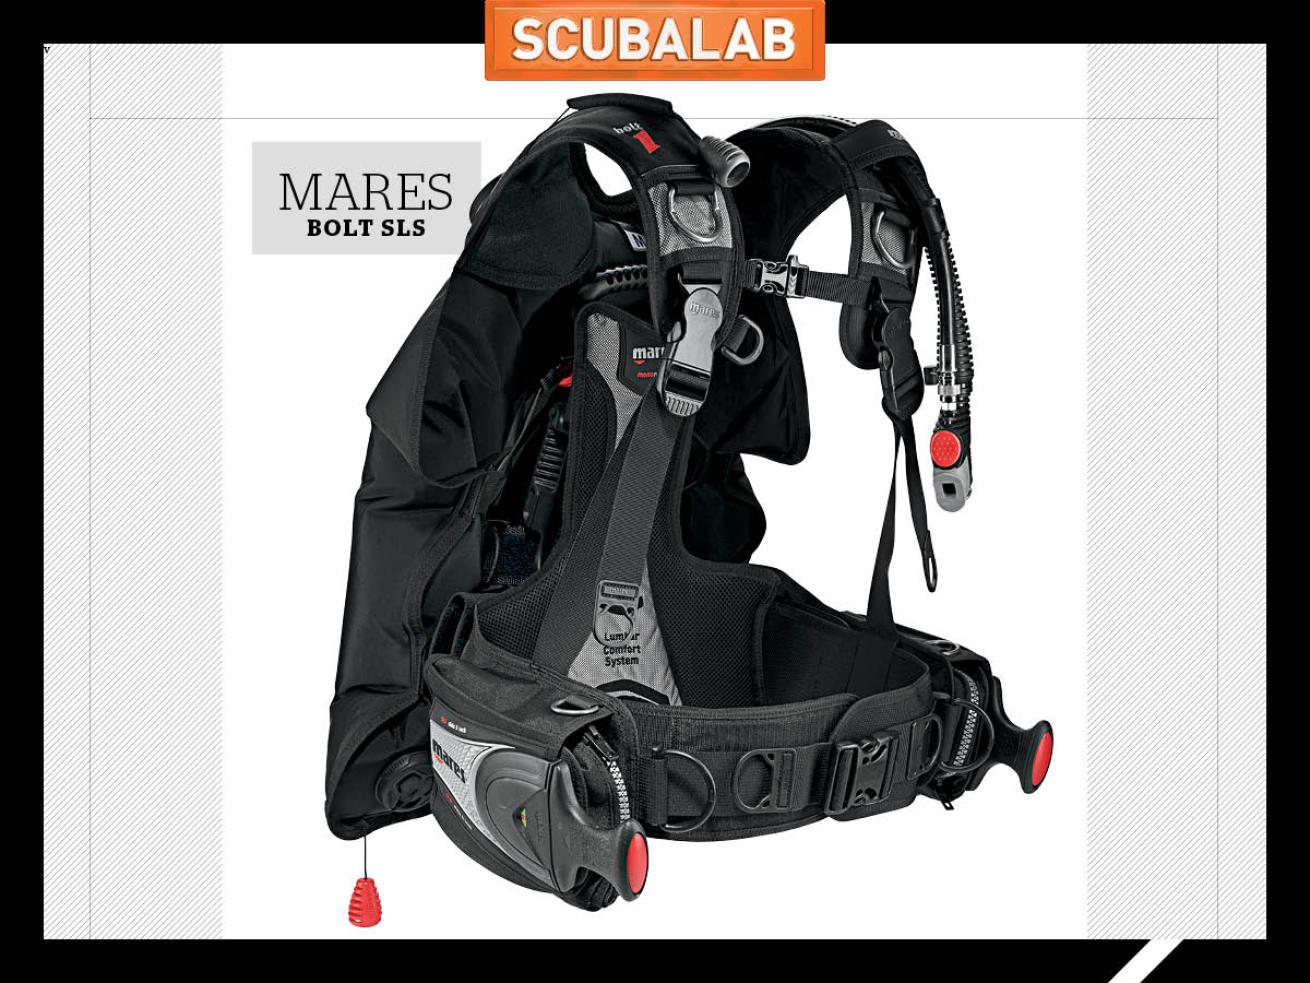 Mares Bolt SLS scuba diving BC ScubaLab gear